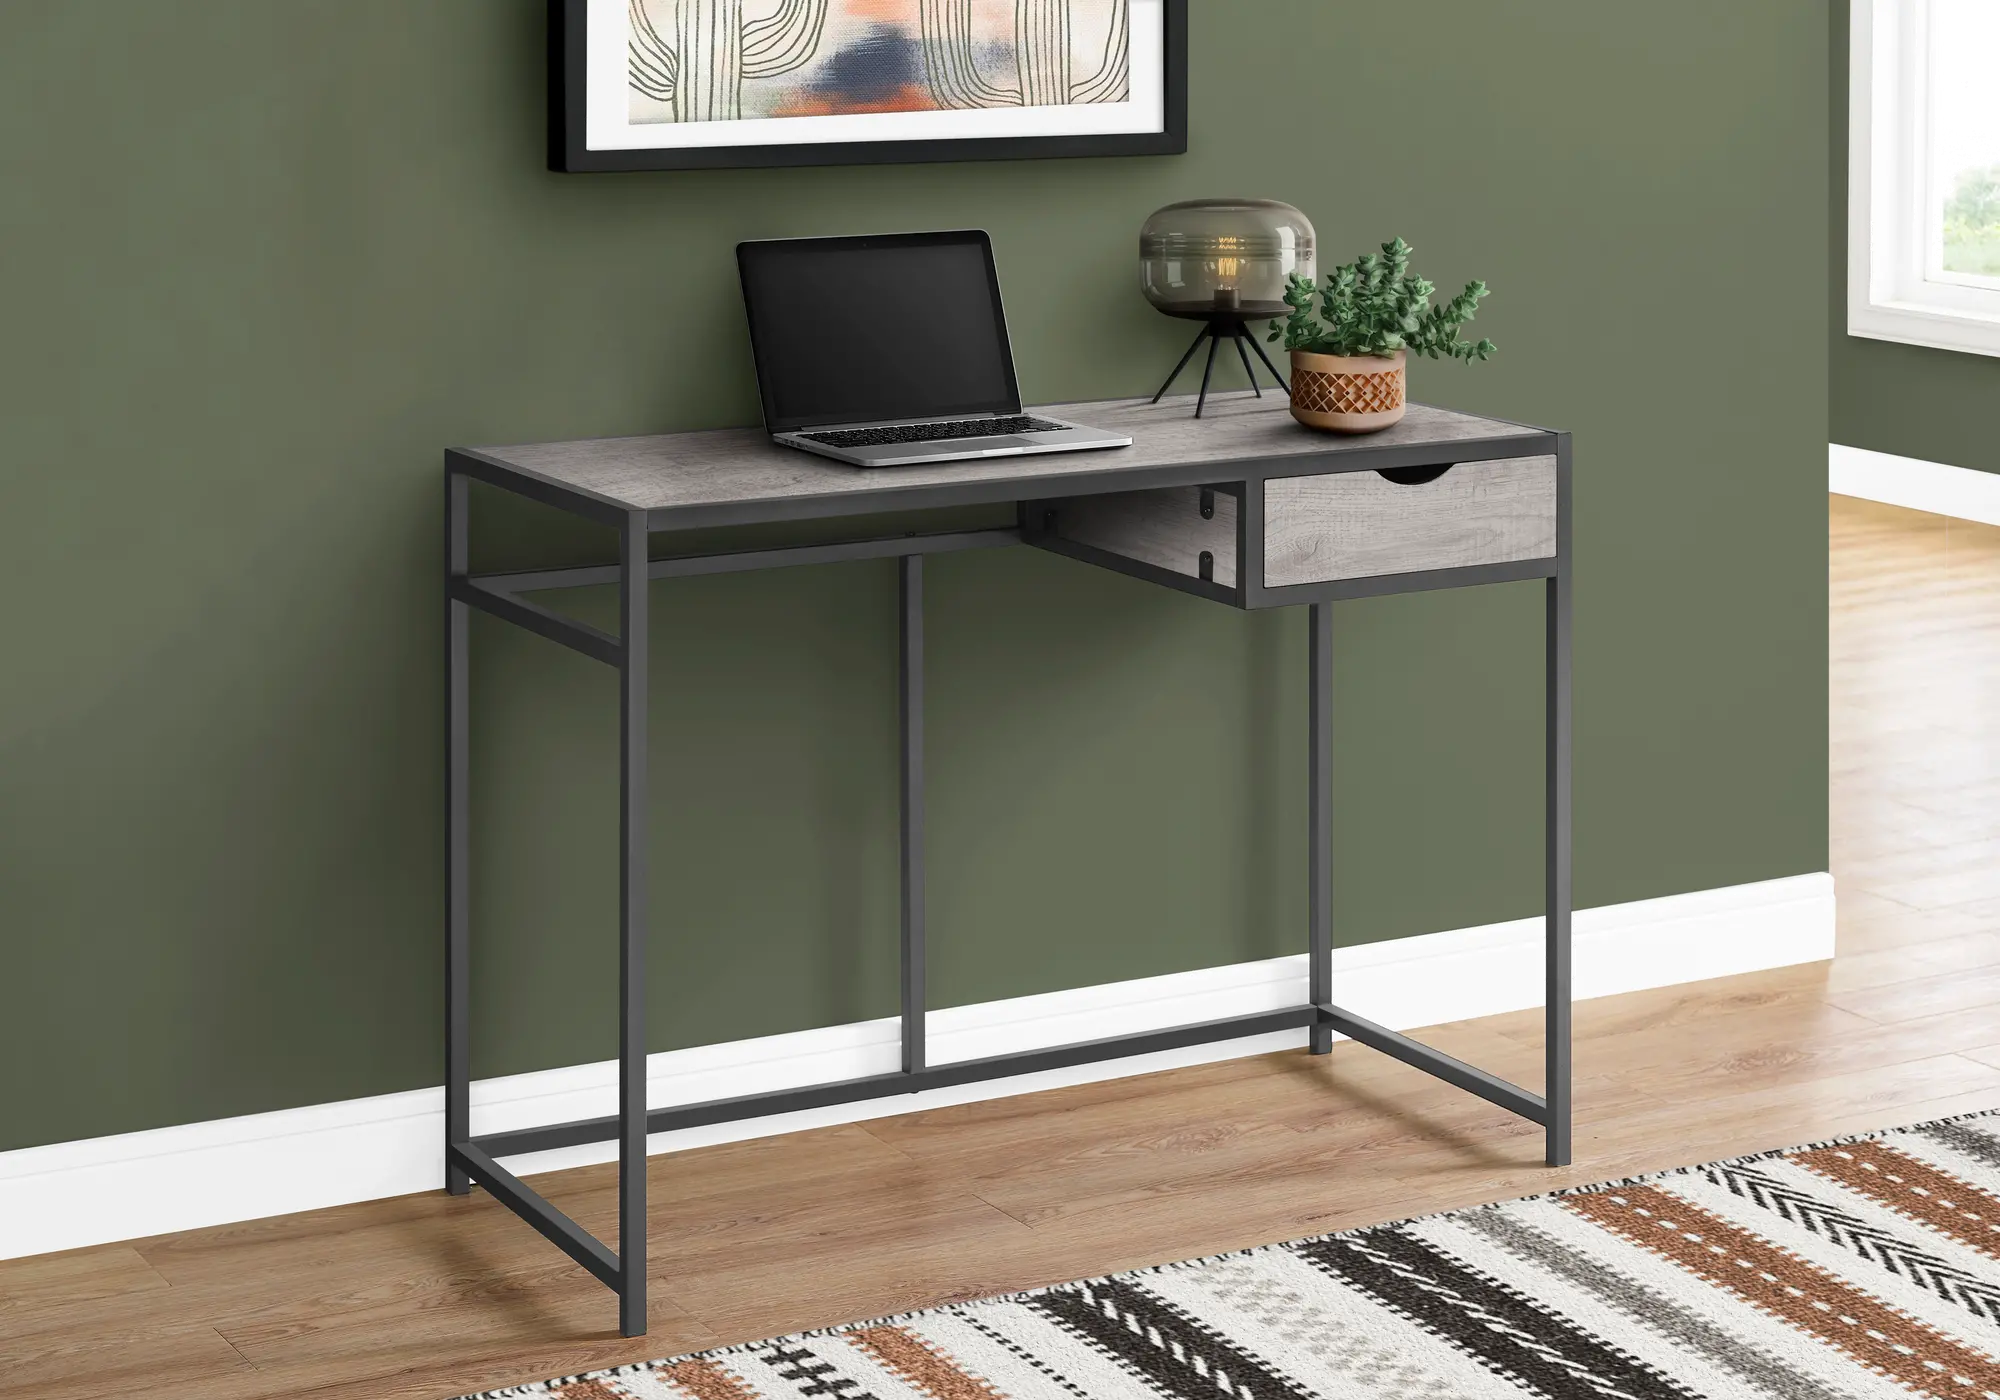 Photos - Office Desk Monarch Specialties Contemporary Gray Computer Desk I 7217 